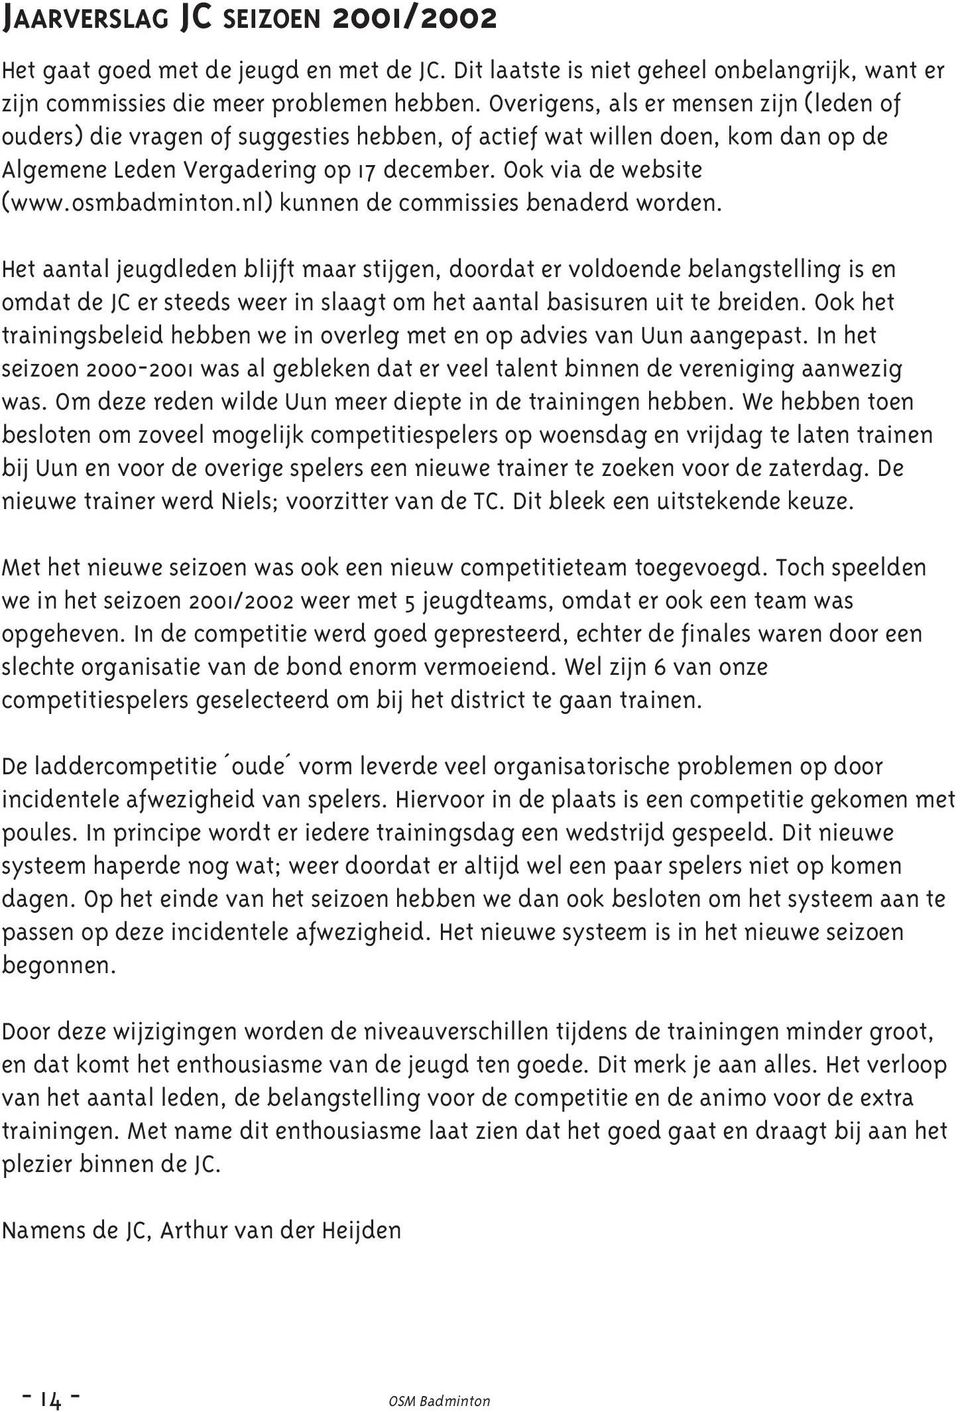 osmbadminton.nl) kunnen de commissies benaderd worden.